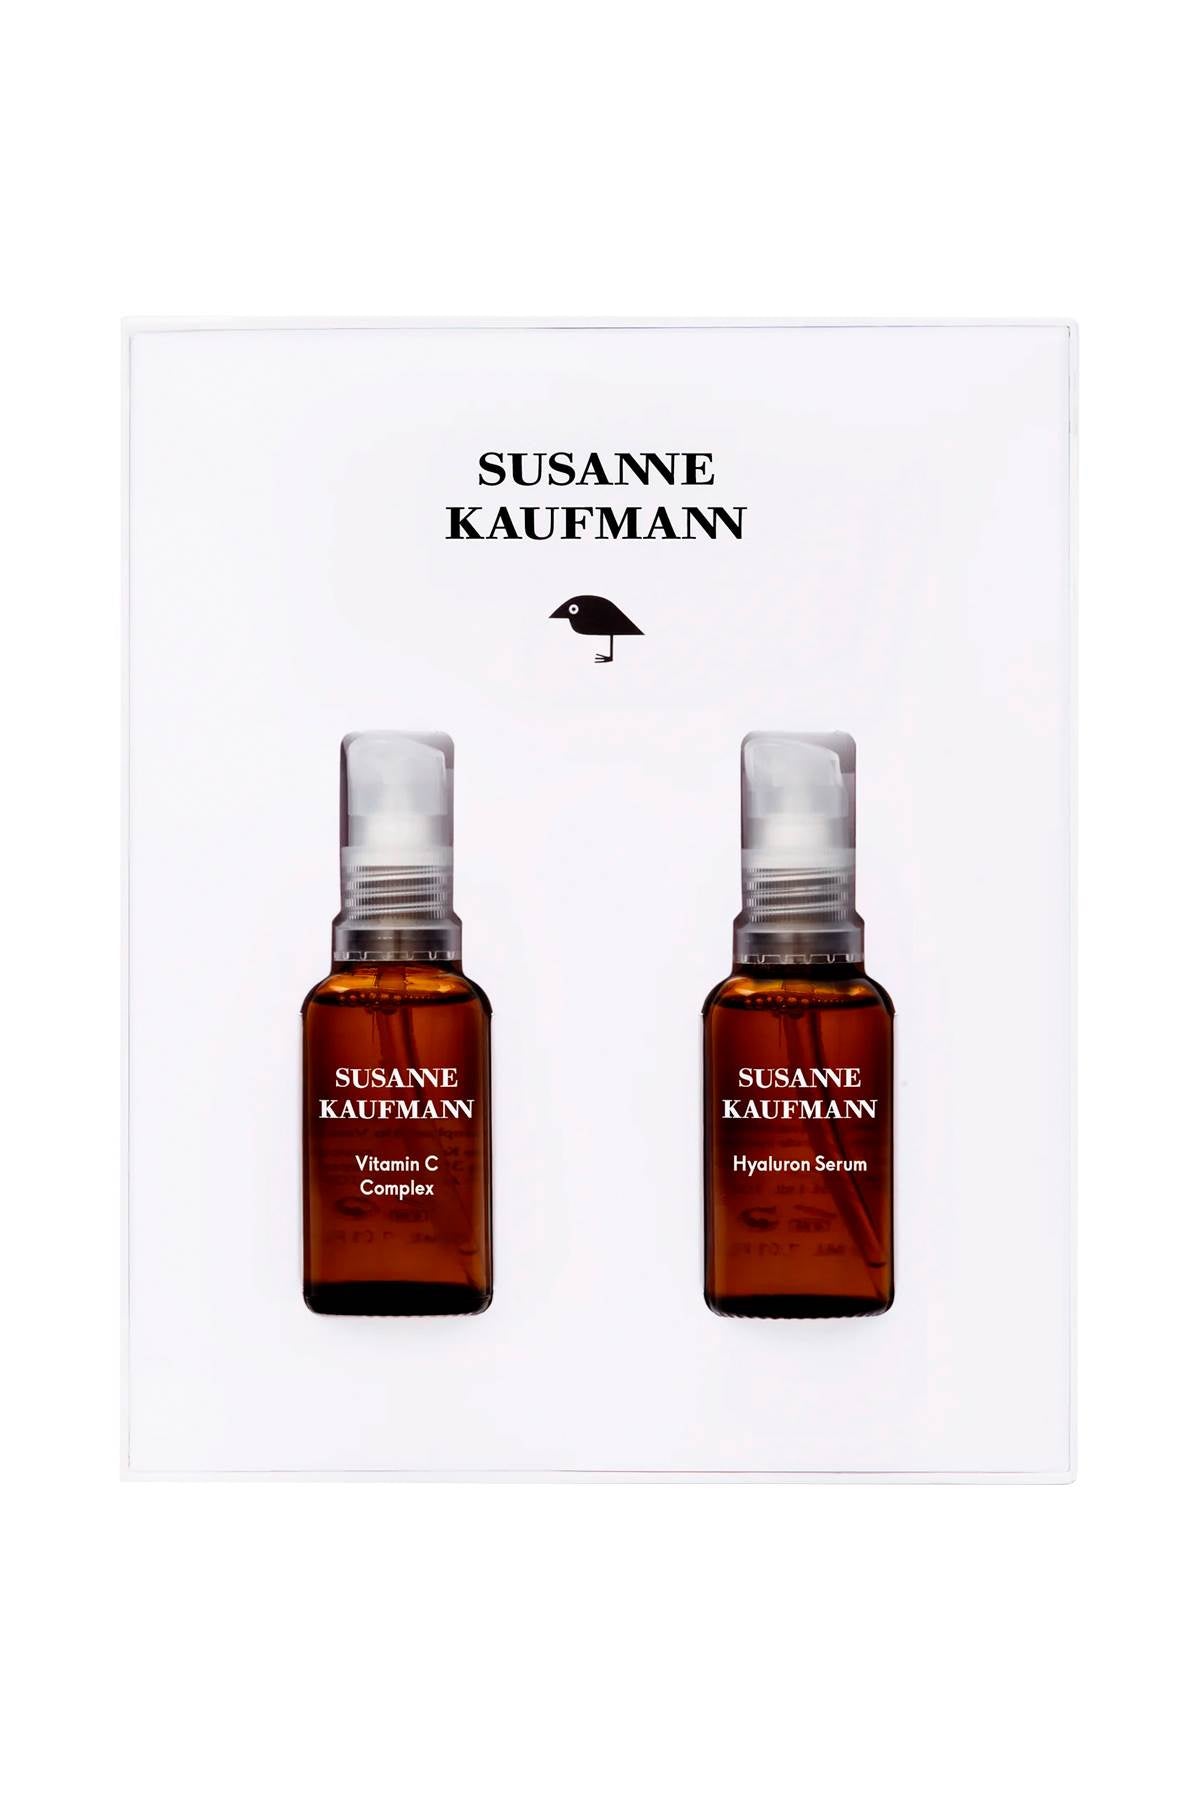 Susanne kaufmann signature serums (hyaluron serum, vitamin c complex) - 2x30 ml-0